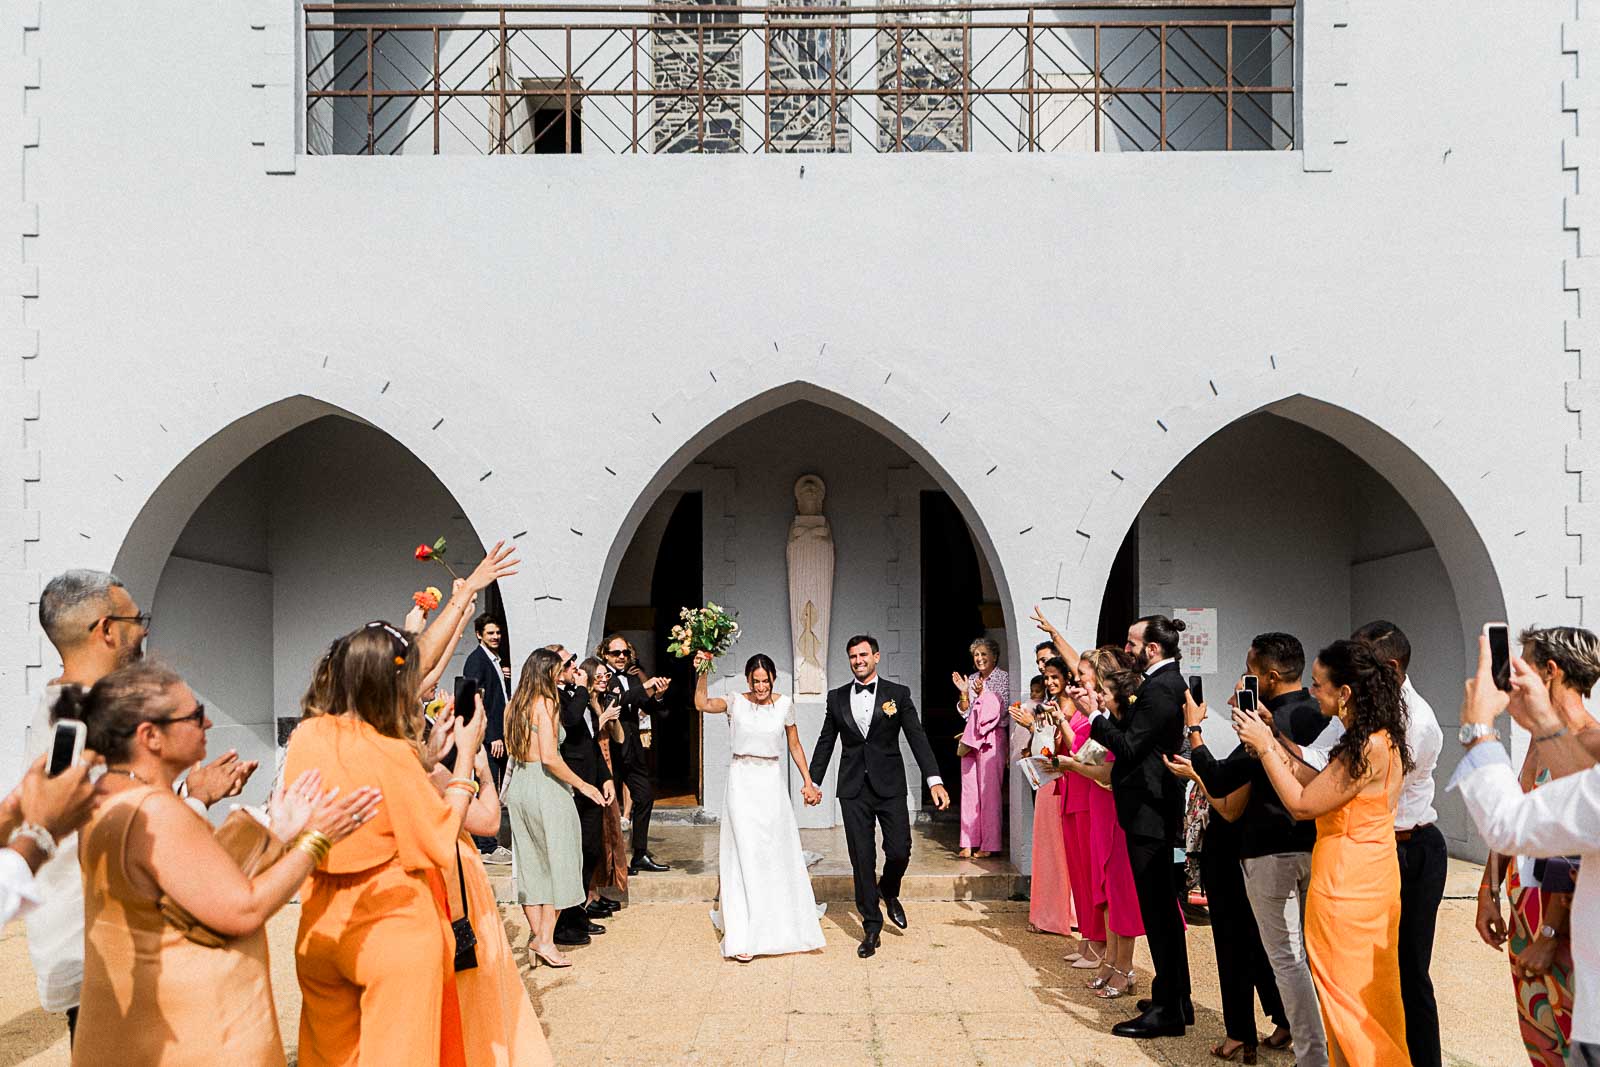 Photographie de Mathieu Dété, photographe de mariage à Saint-Leu sur l'île de la Réunion 974, présentant la sortie de la cérémonie religieuse devant l'église de Saint-Gilles-les-Bains